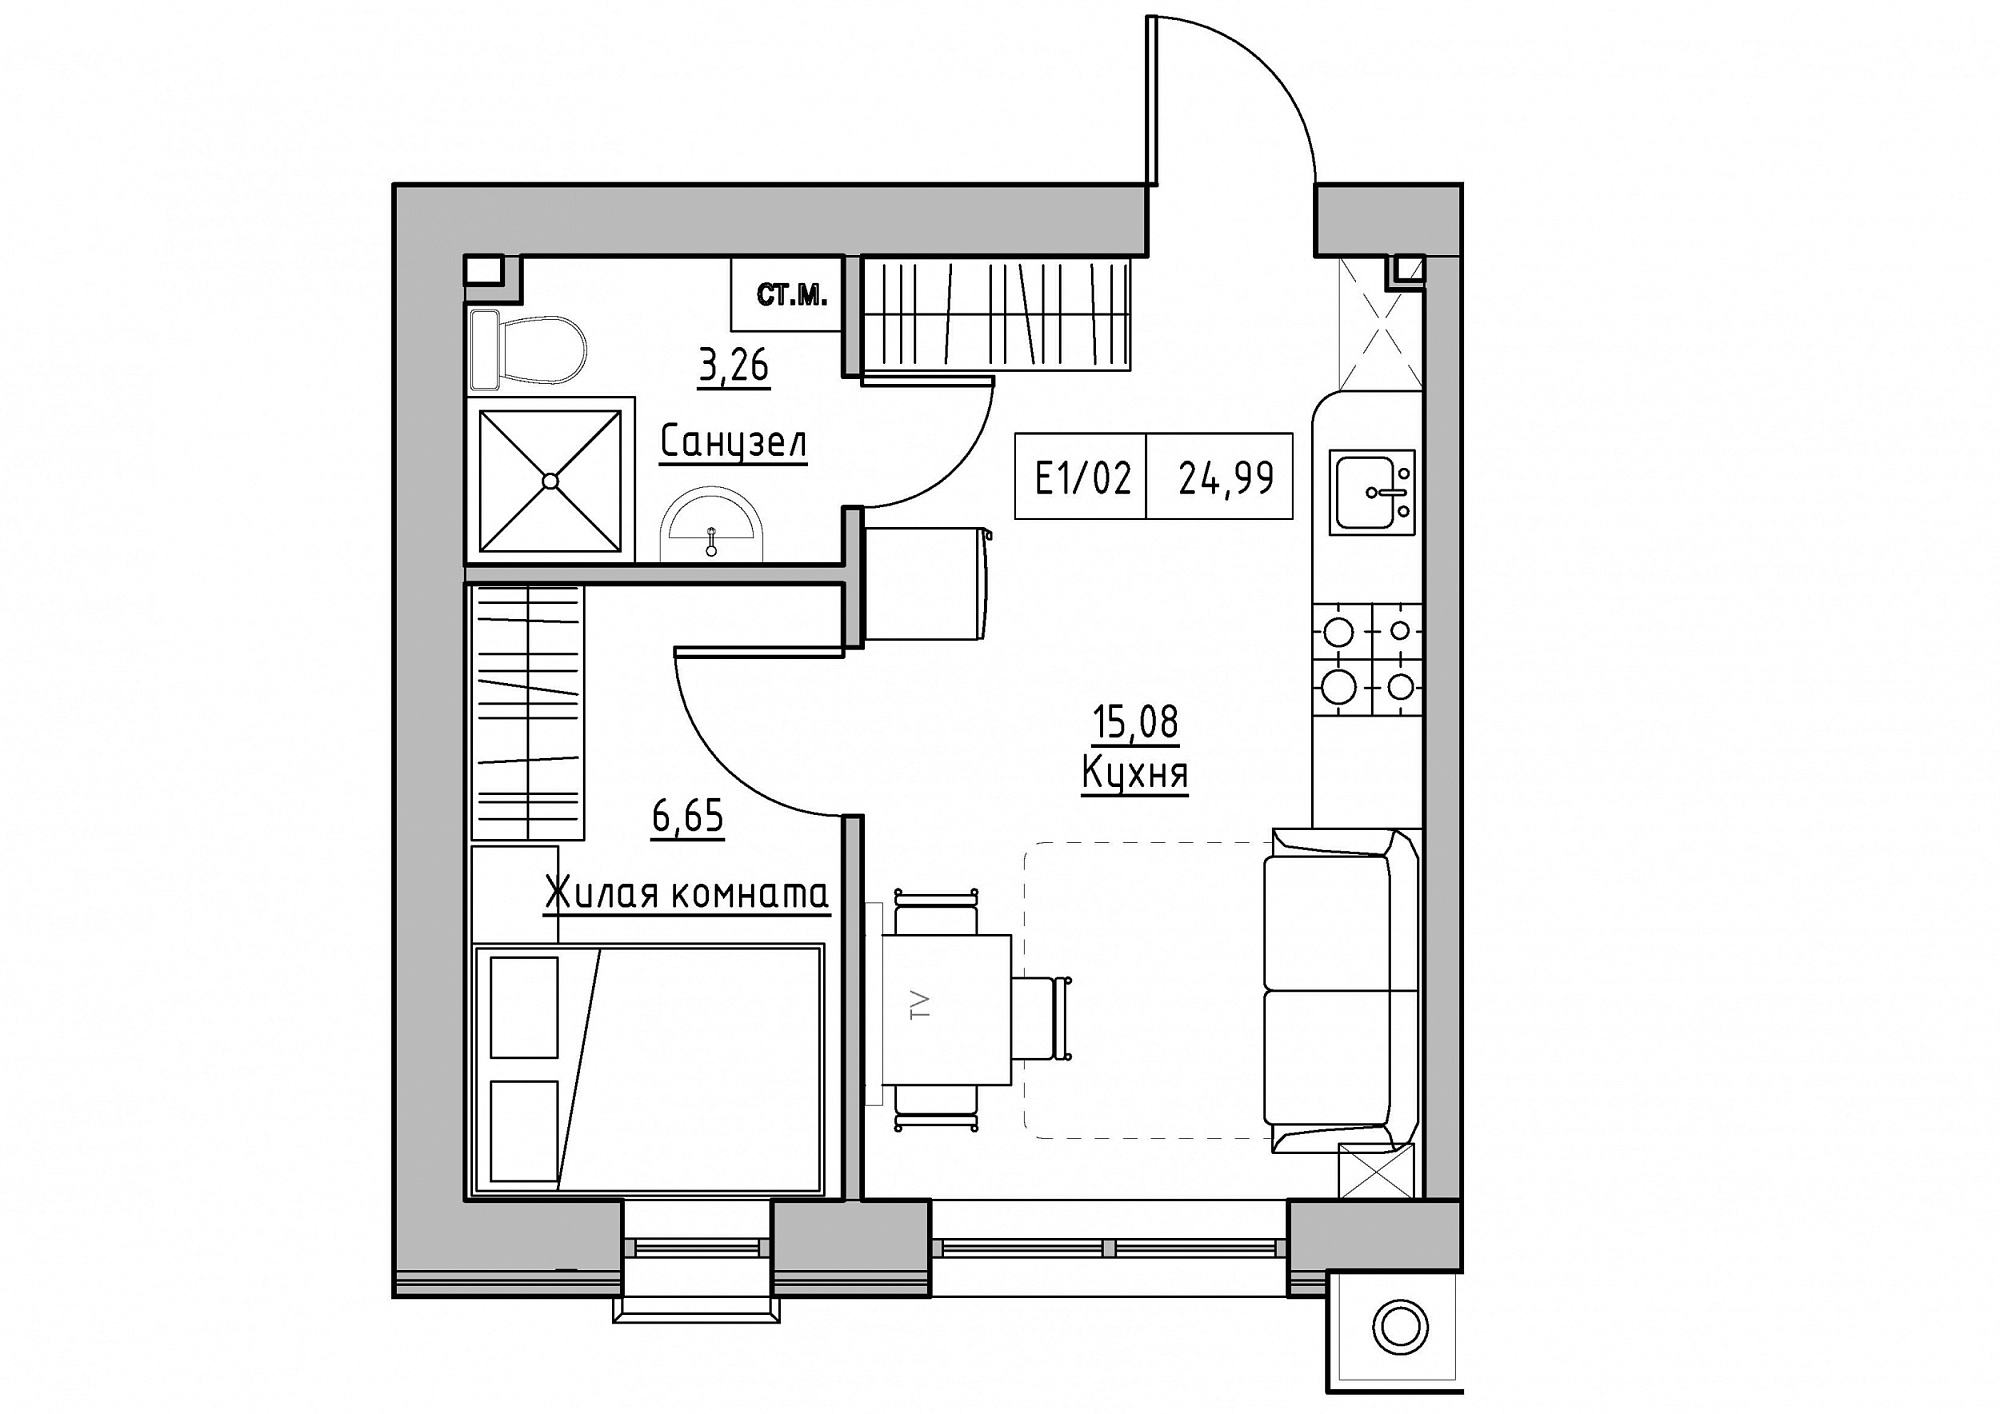 Планування 1-к квартира площею 24.99м2, KS-011-02/0012.